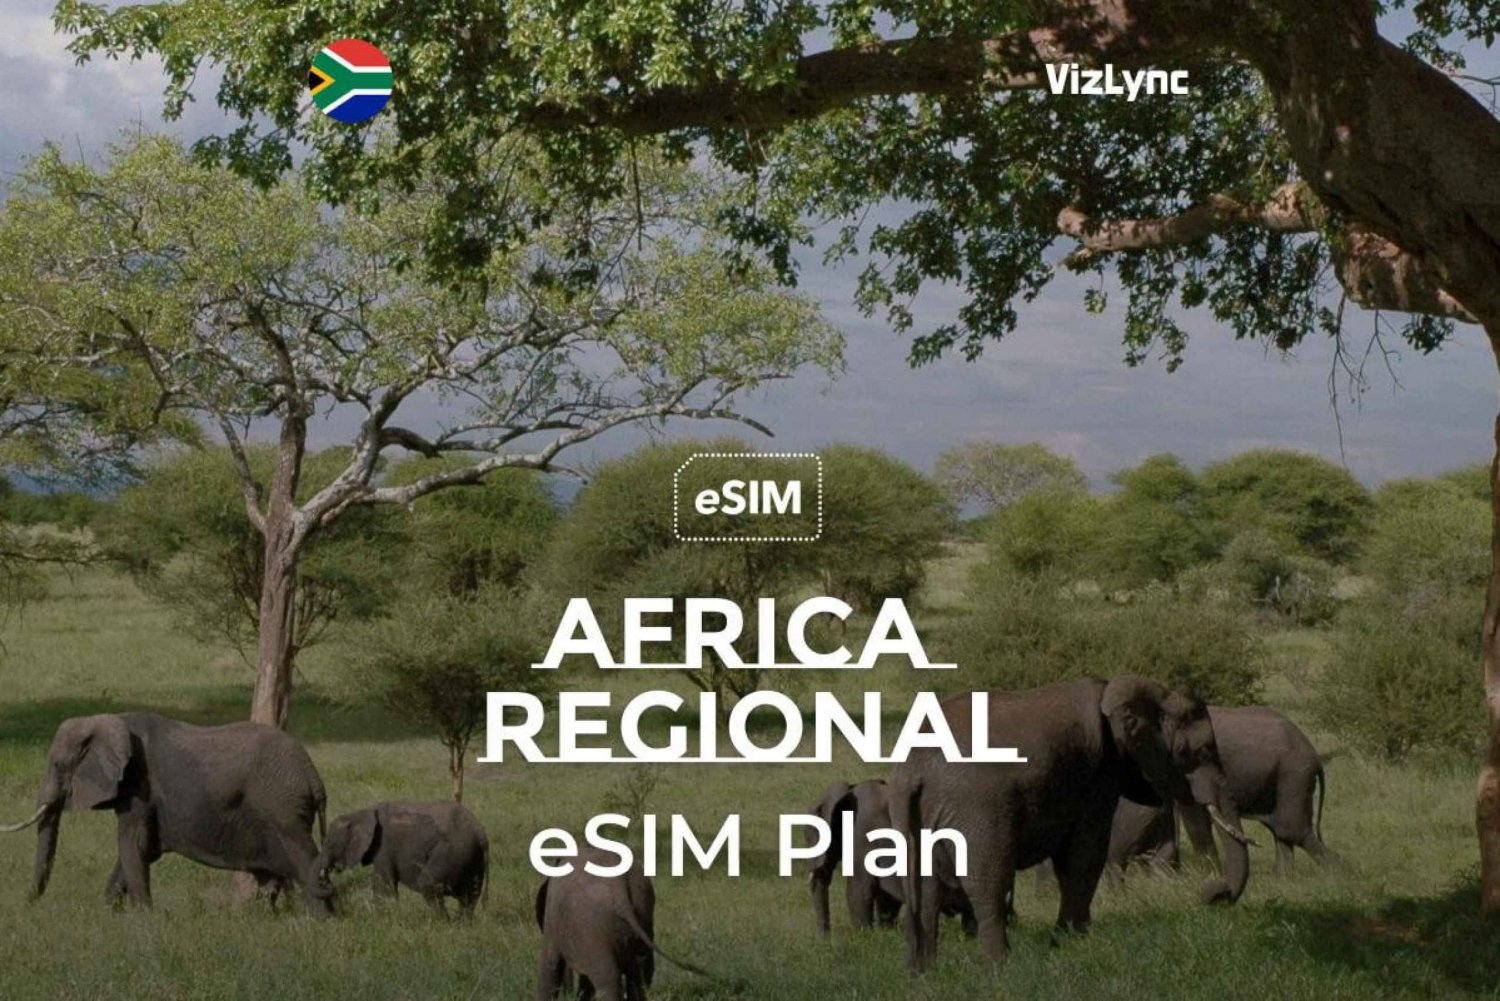 Bedste rejse-eSIM til Afrika med 10 GB data i 30 dage'